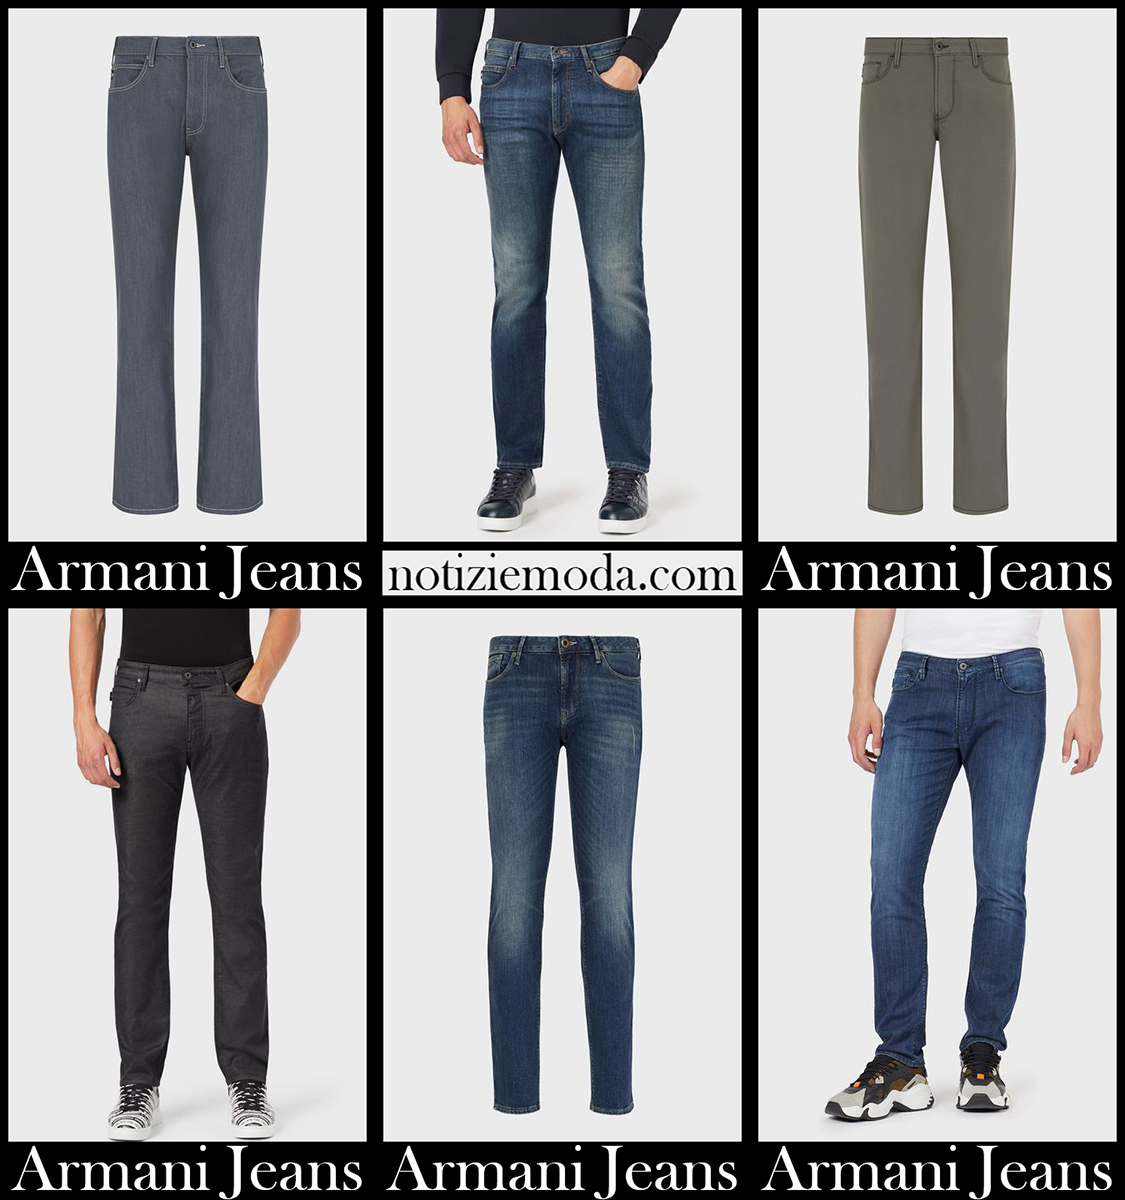 Nuovi arrivi jeans Armani 2021 abbigliamento denim uomo